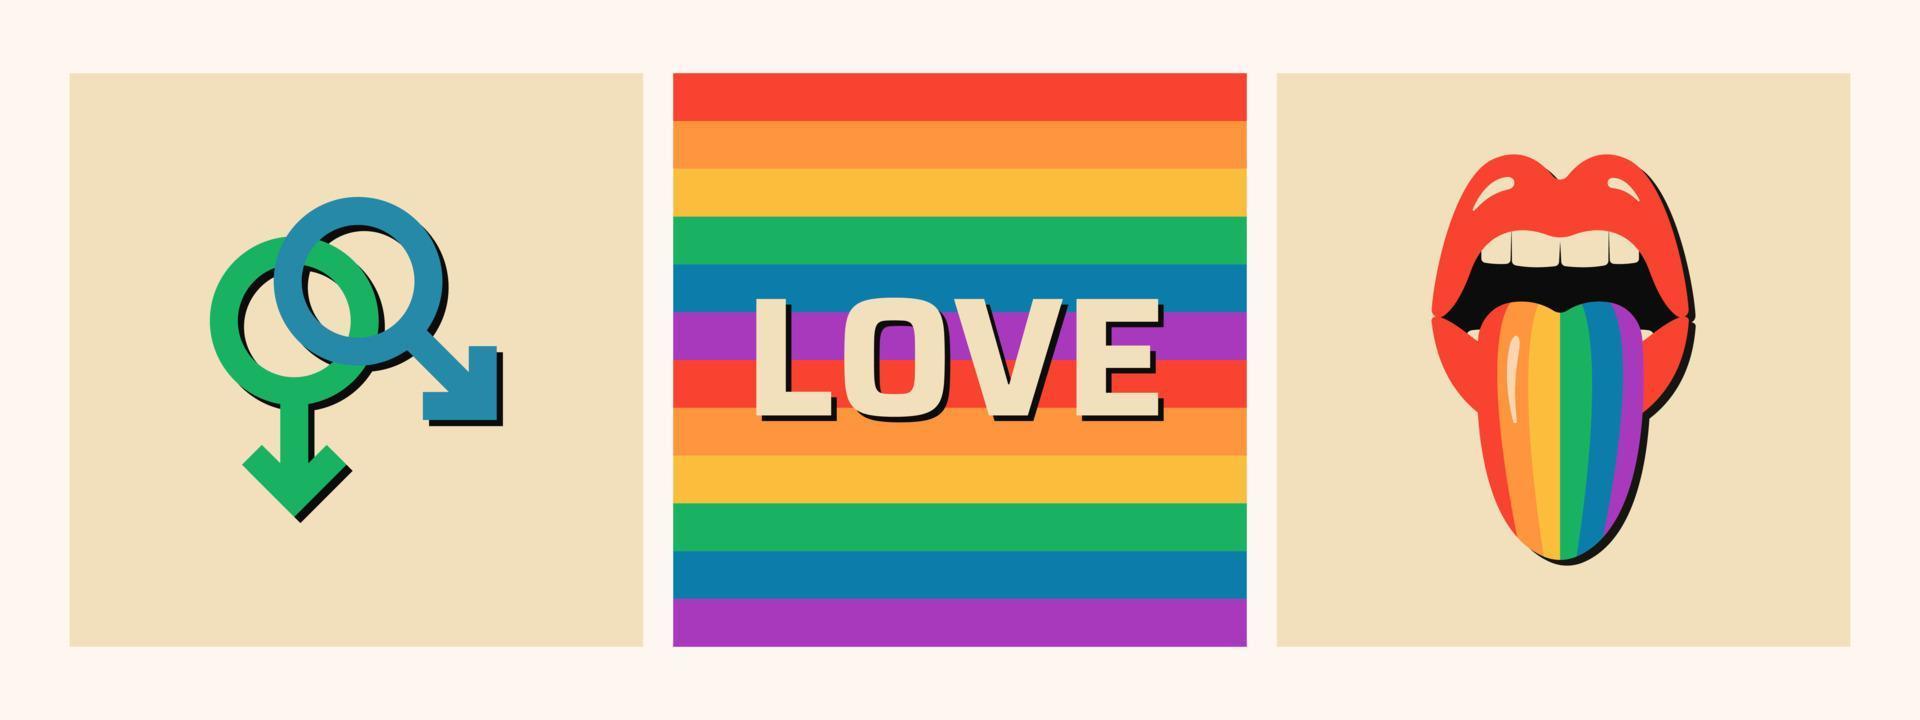 uppsättning minimalistiska hbt-banners. homosexuella relation kön symbol. vektor